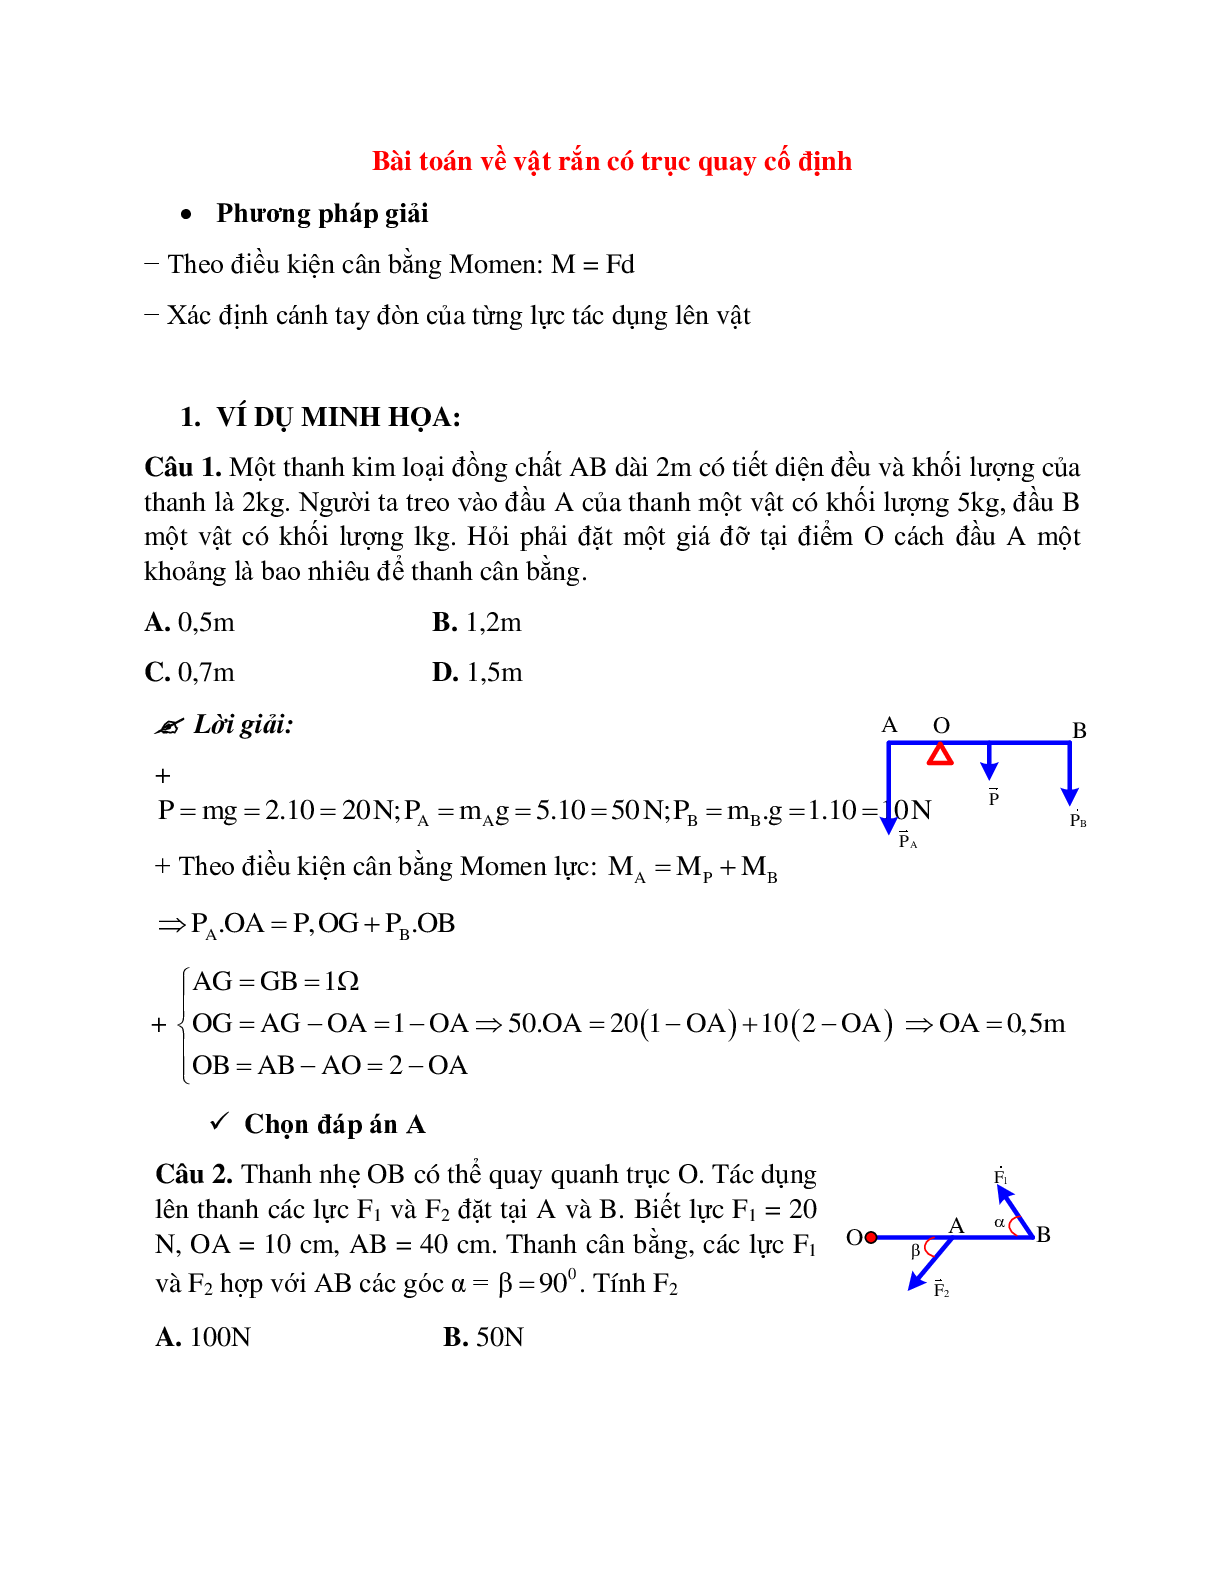 Phương pháp giải và bài tập về Bài toán về vật rắn có trục quay cố định (trang 1)